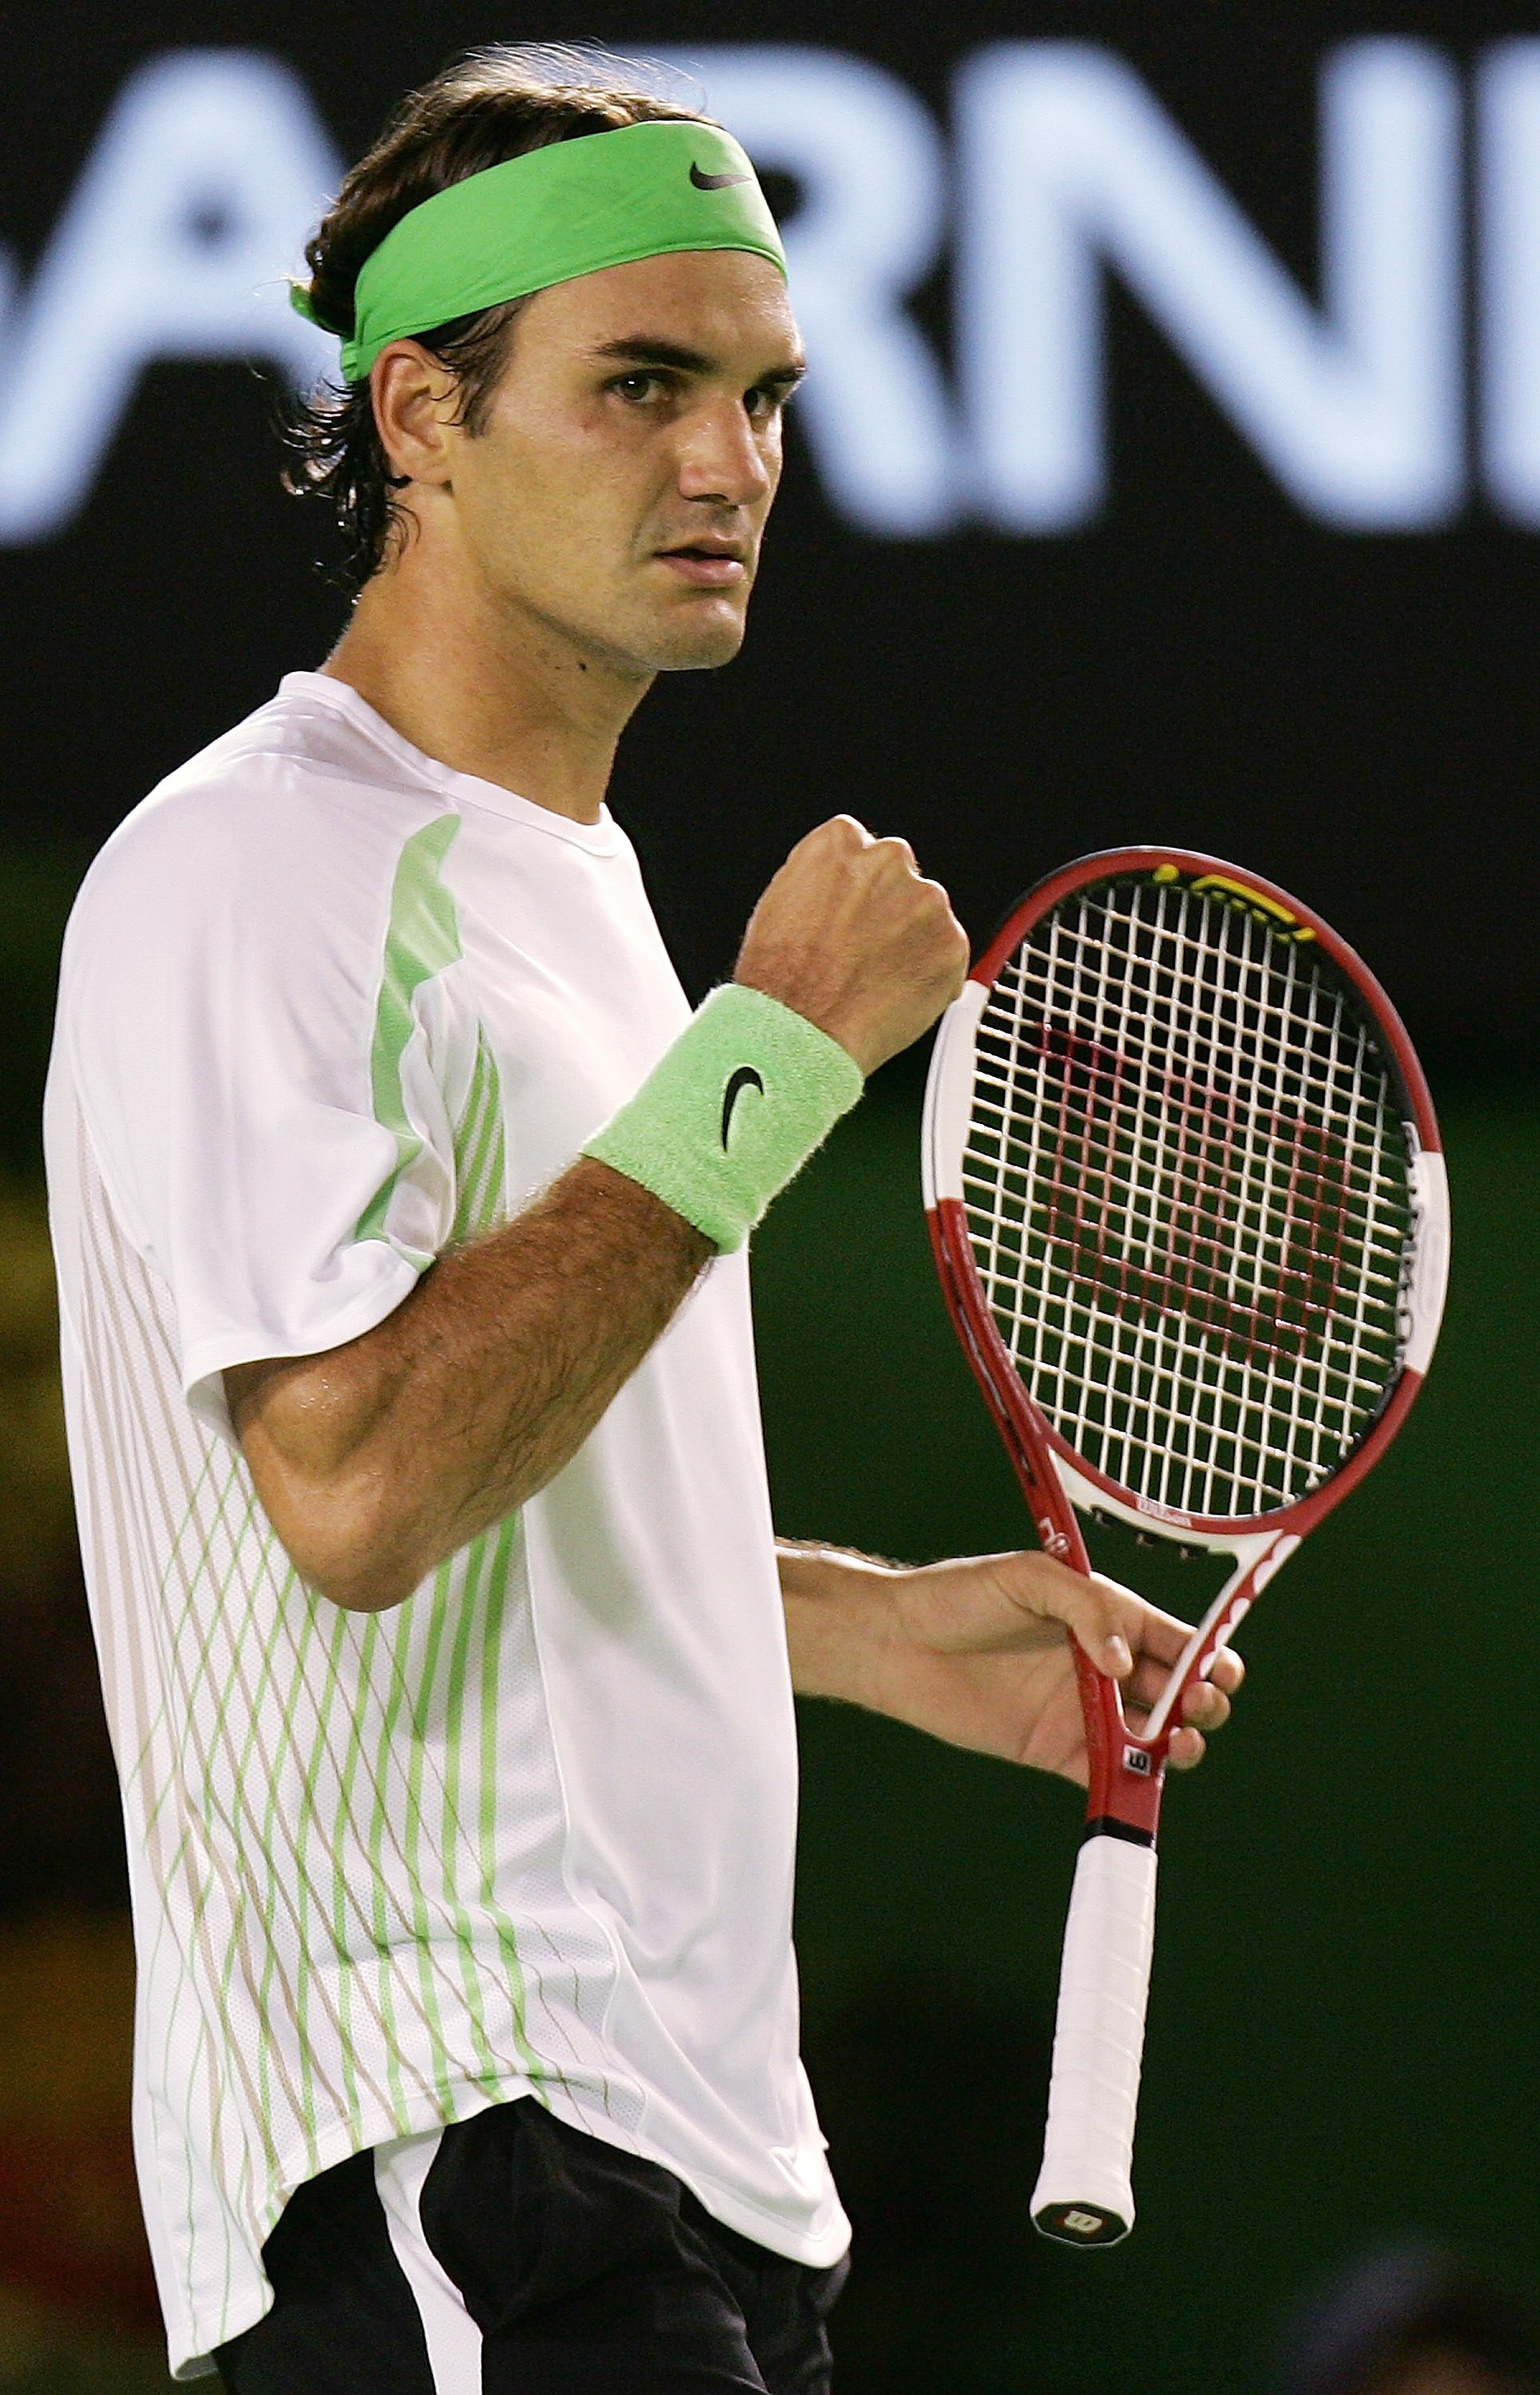 Store Skal Bære Roger Federer: How the Australian Open 2011 Helped Shape His Legendary  Career | Bleacher Report | Latest News, Videos and Highlights